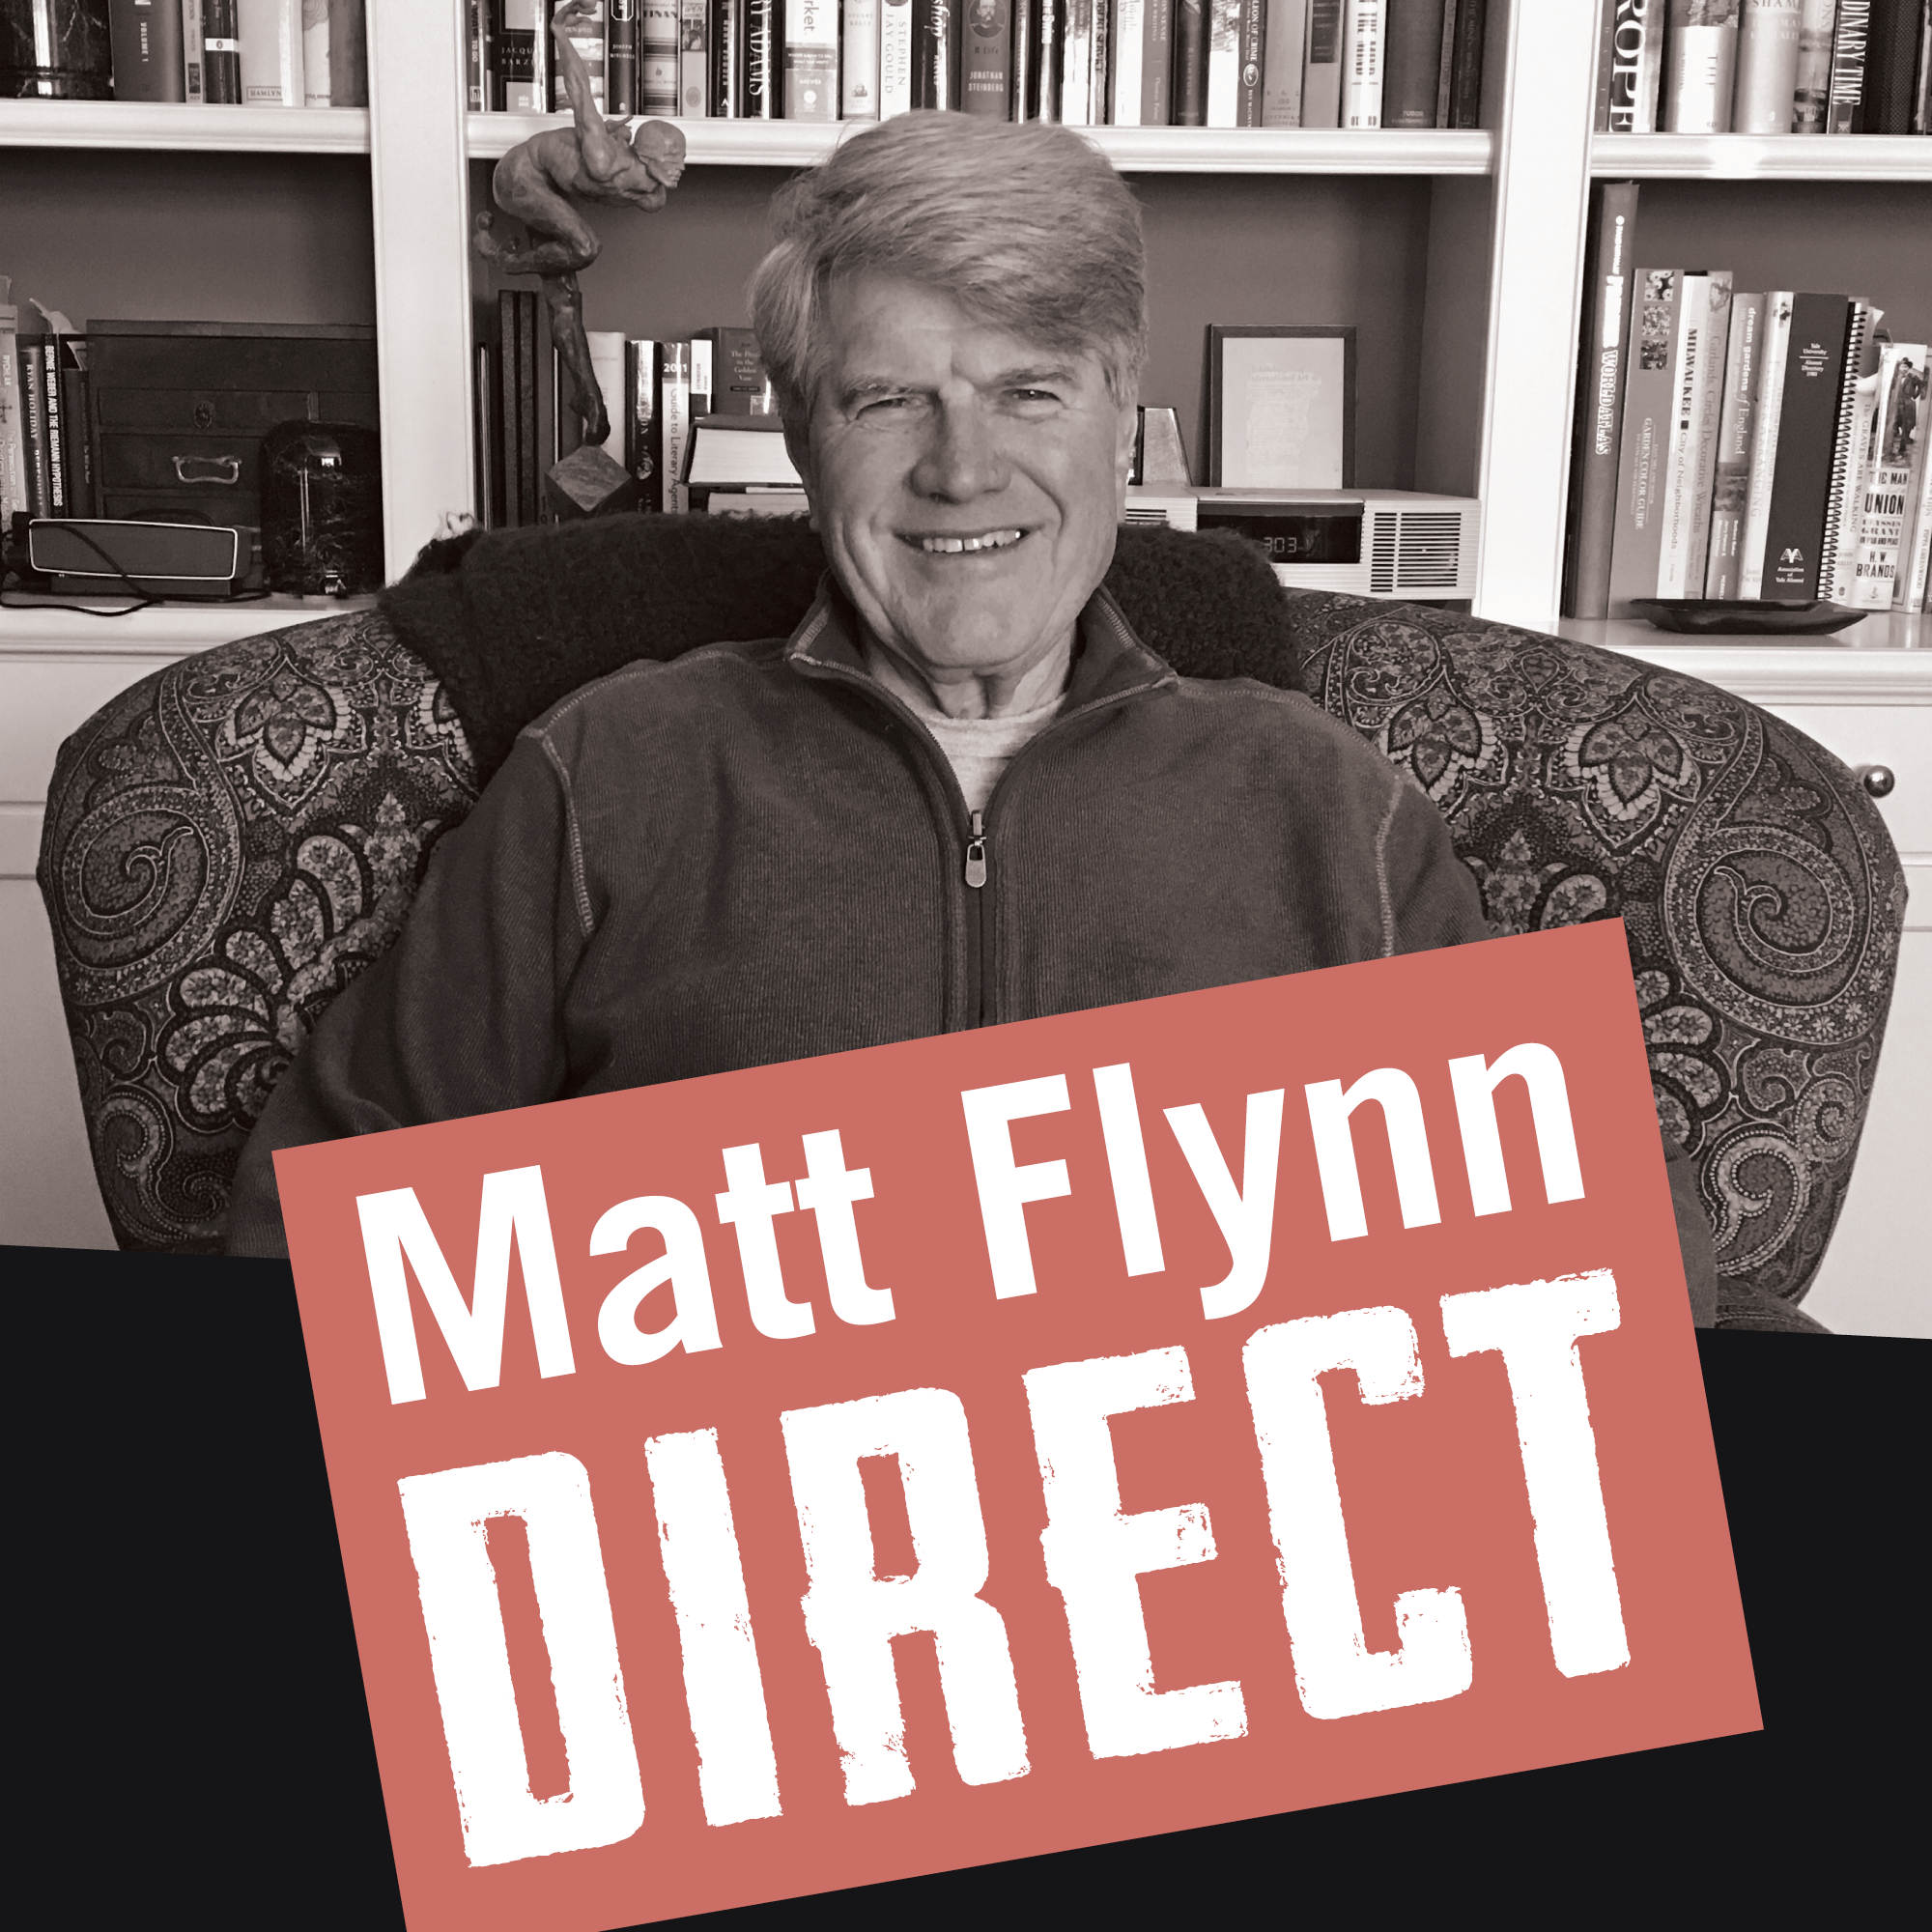 Matt Flynn Direct logo